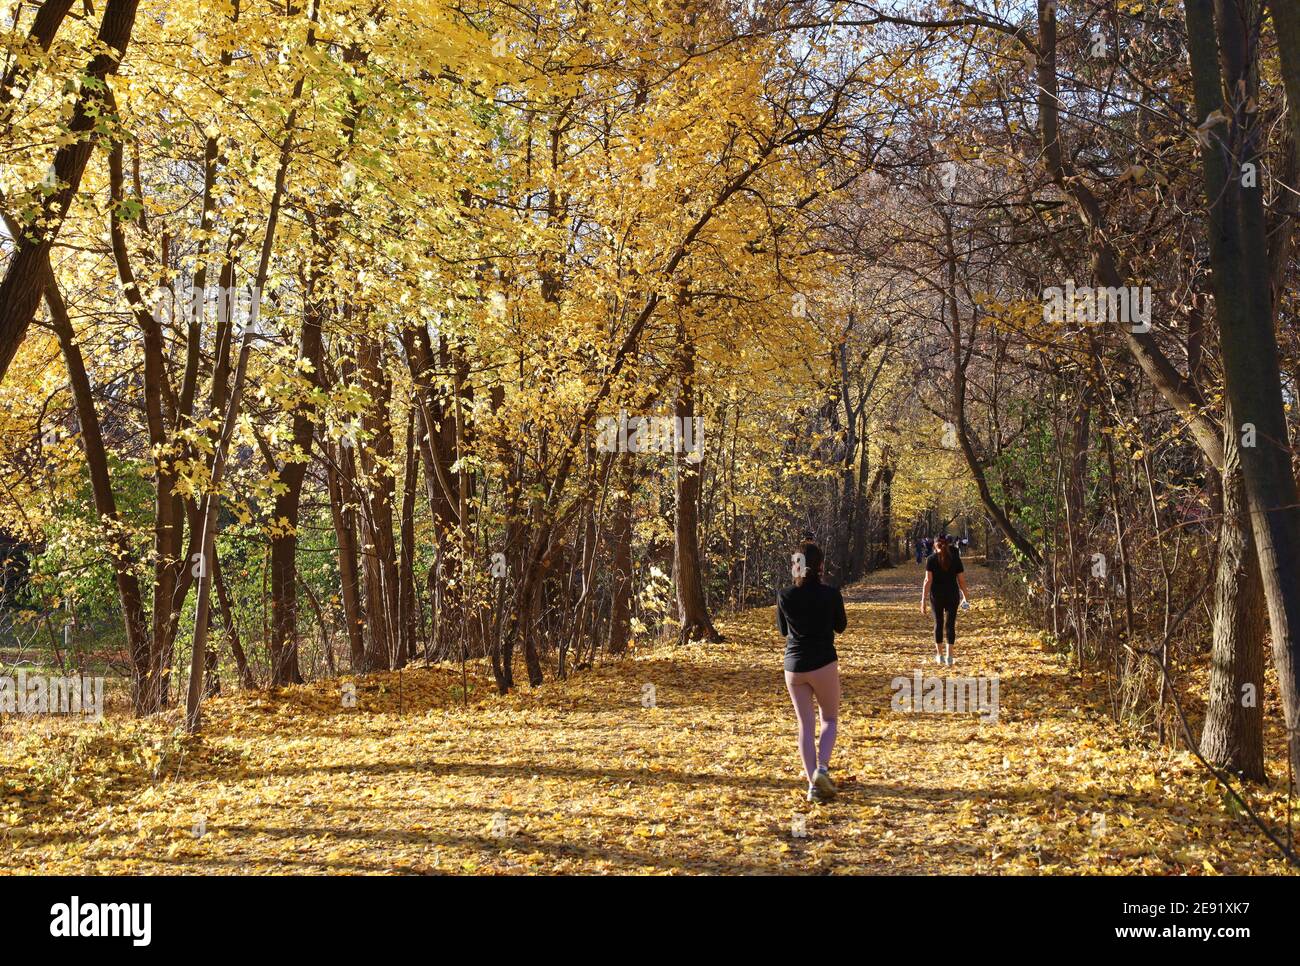 Sentier de loisirs bordé d'arbres aux couleurs éclatantes de l'automne Banque D'Images